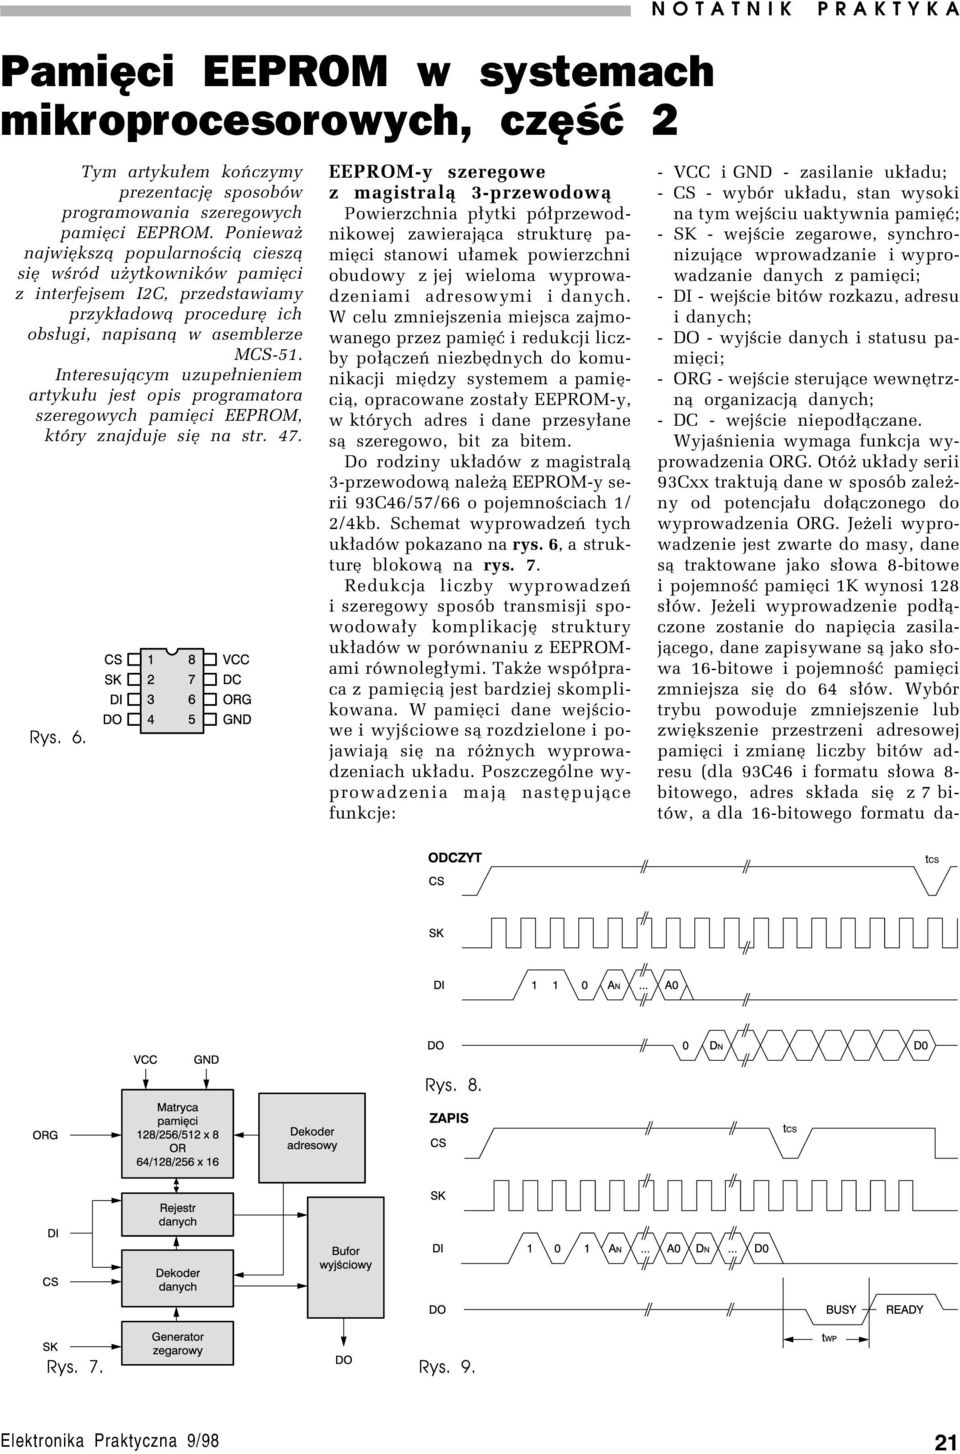 Interesuj¹cym uzupe³nieniem artyku³u jest opis programatora szeregowych pamiíci EEPROM, ktûry znajduje sií na str. 47. Rys. 6.